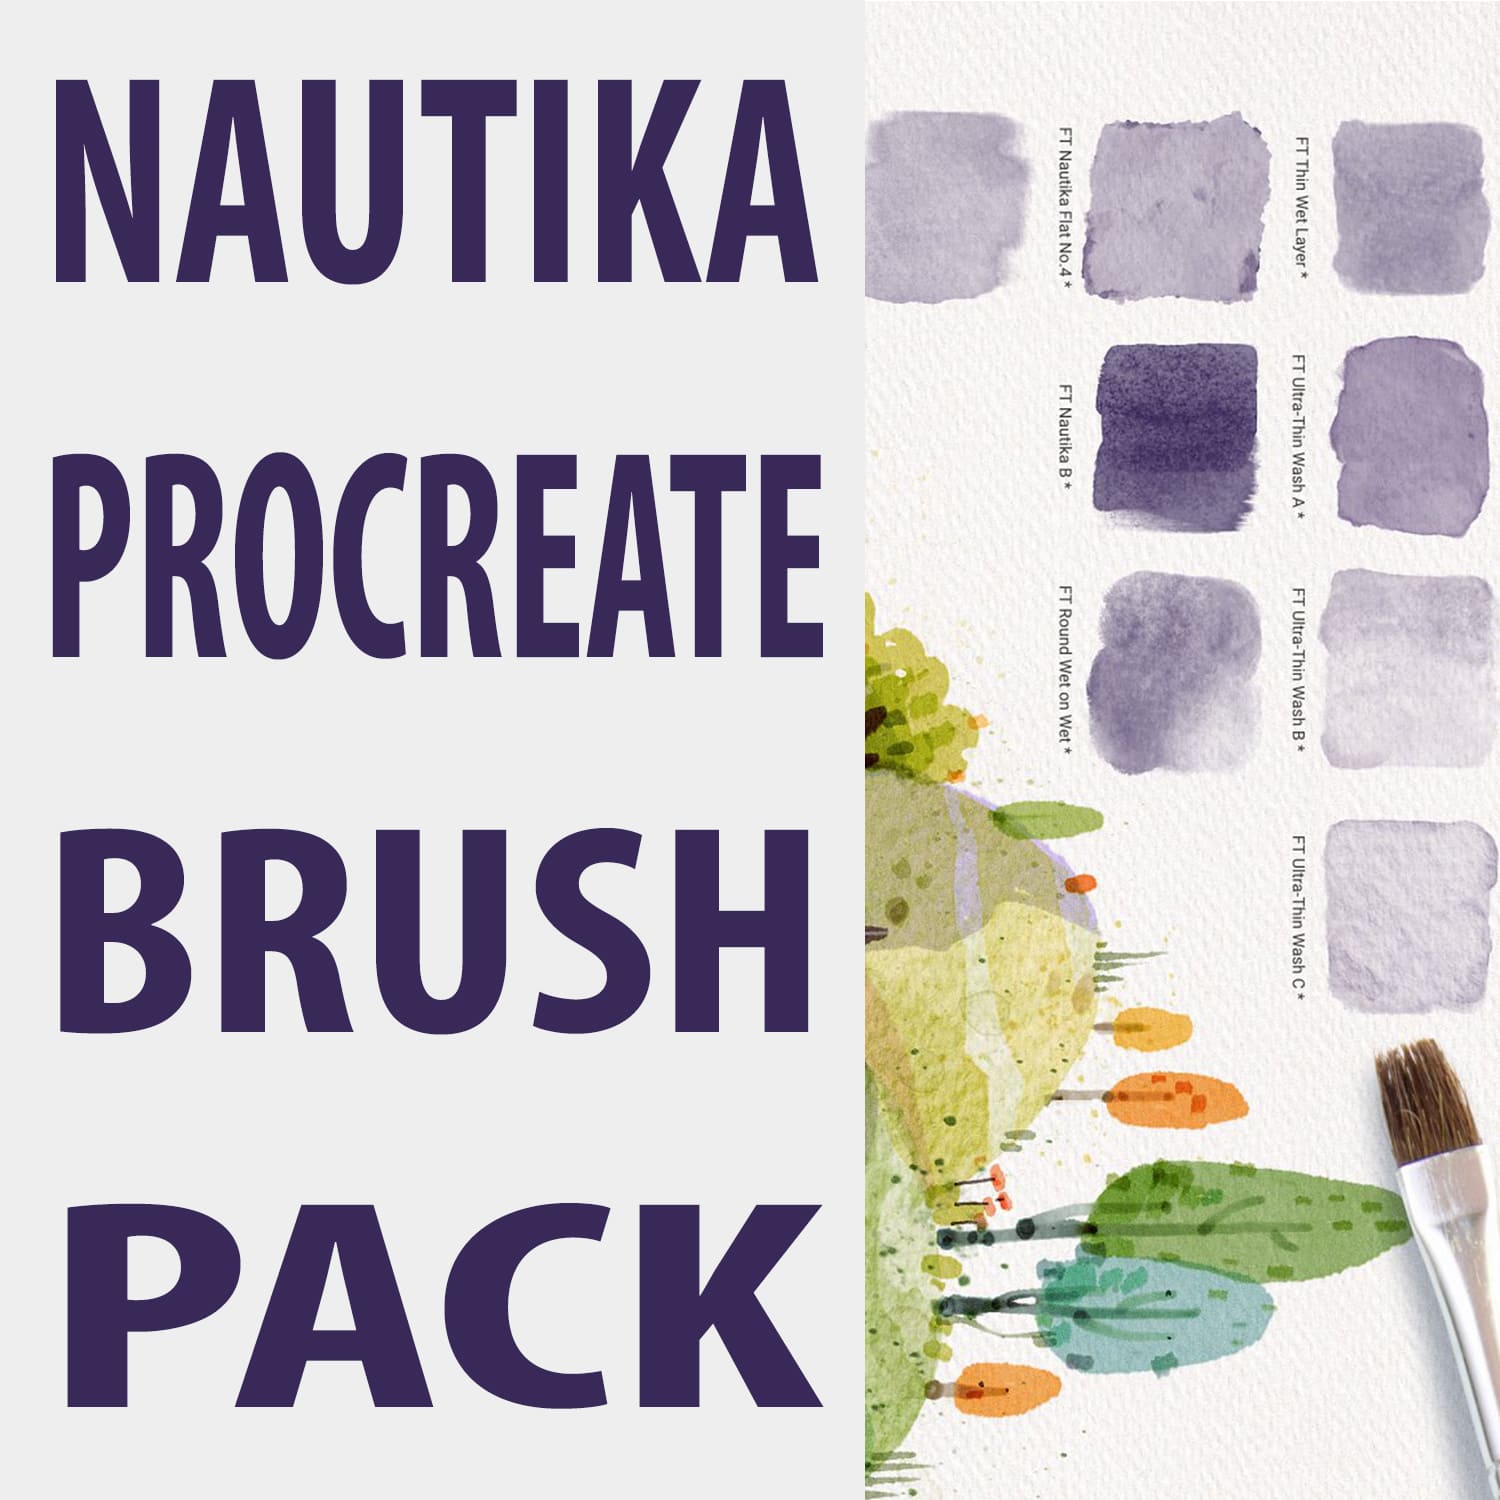 Nautika Procreate Brush Pack main cover.